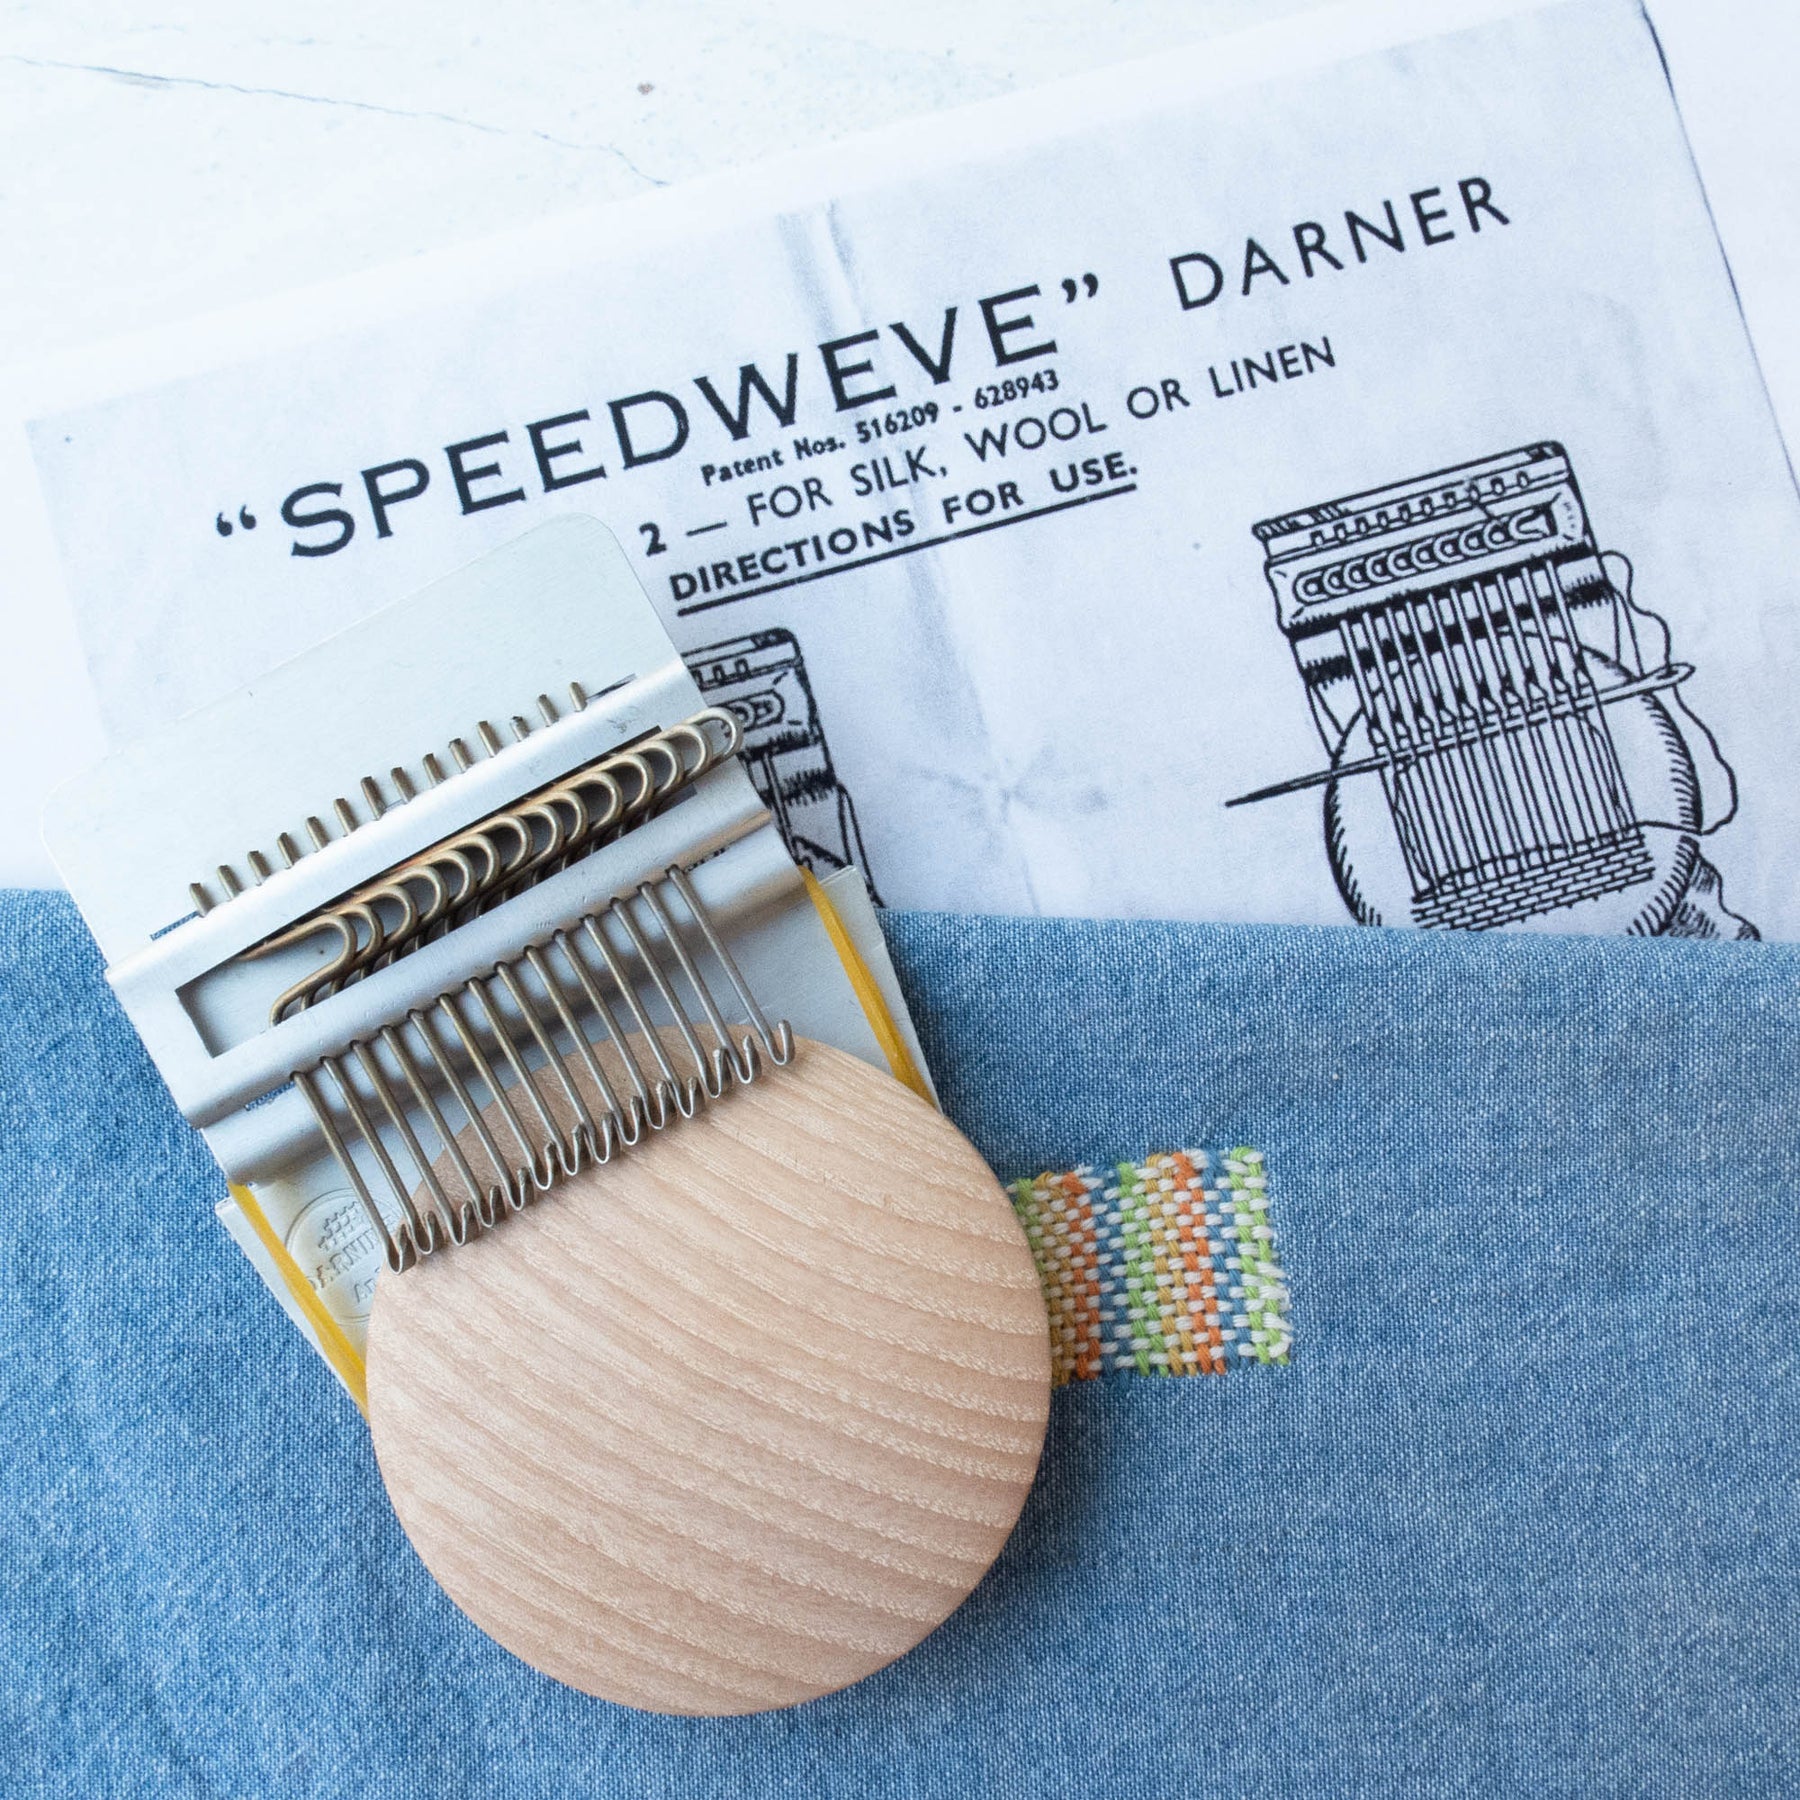 Hands DIY Darning Loom Speedweve Type Weave Tool 14 Hooks